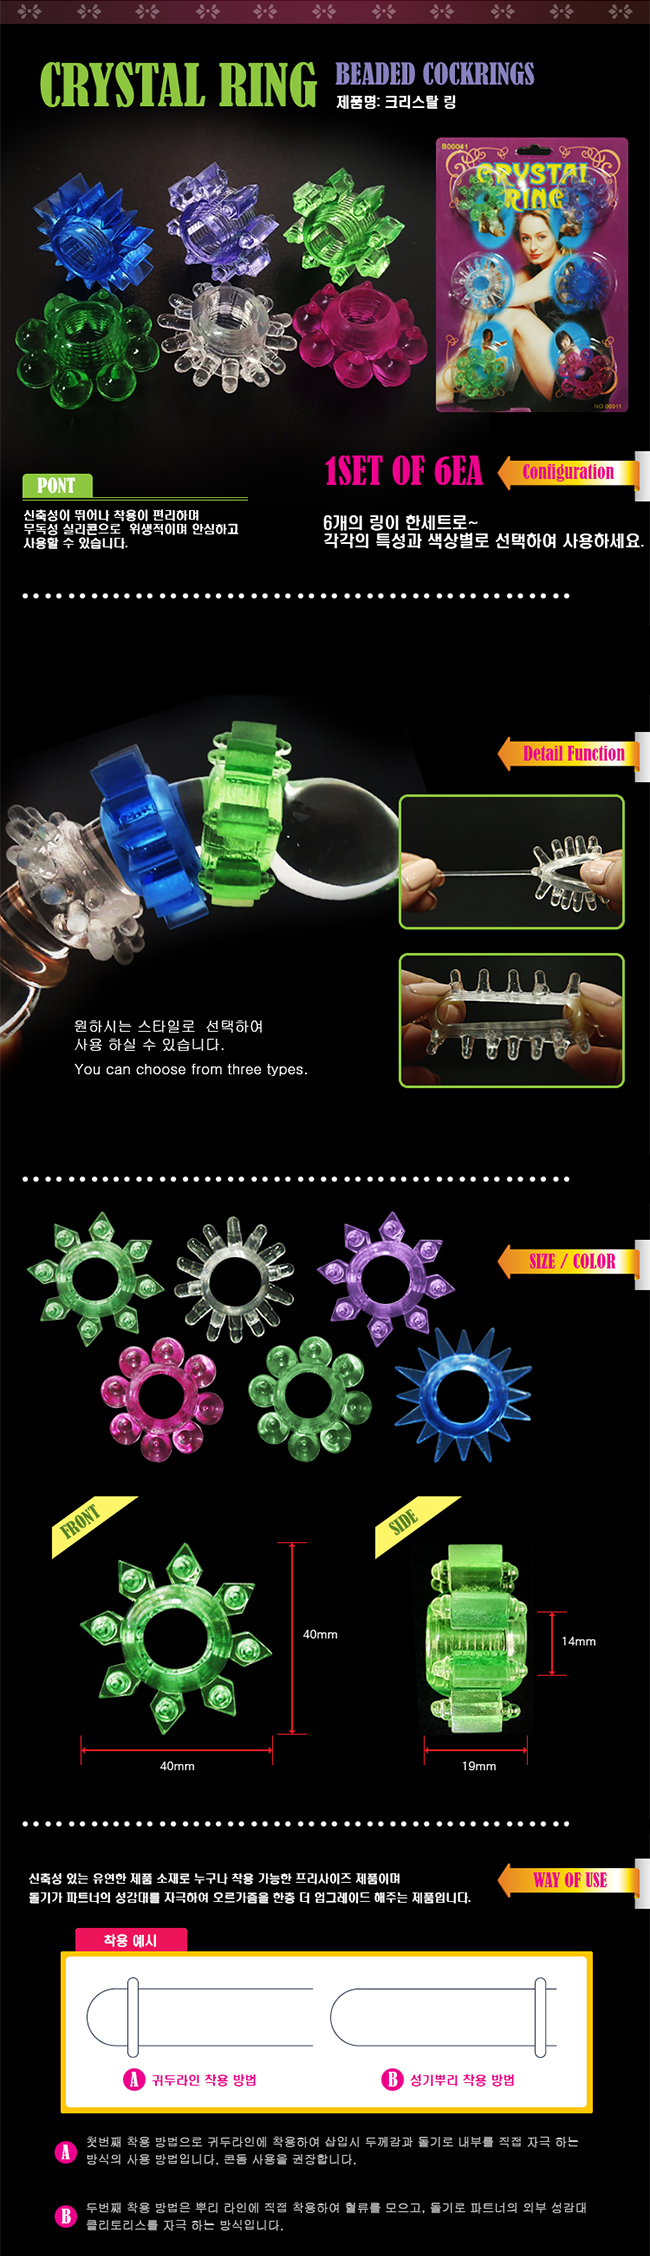 [발기력 강화] 크리스탈 링 6p(Crystal RIng) - 특수콘돔 6종 세트